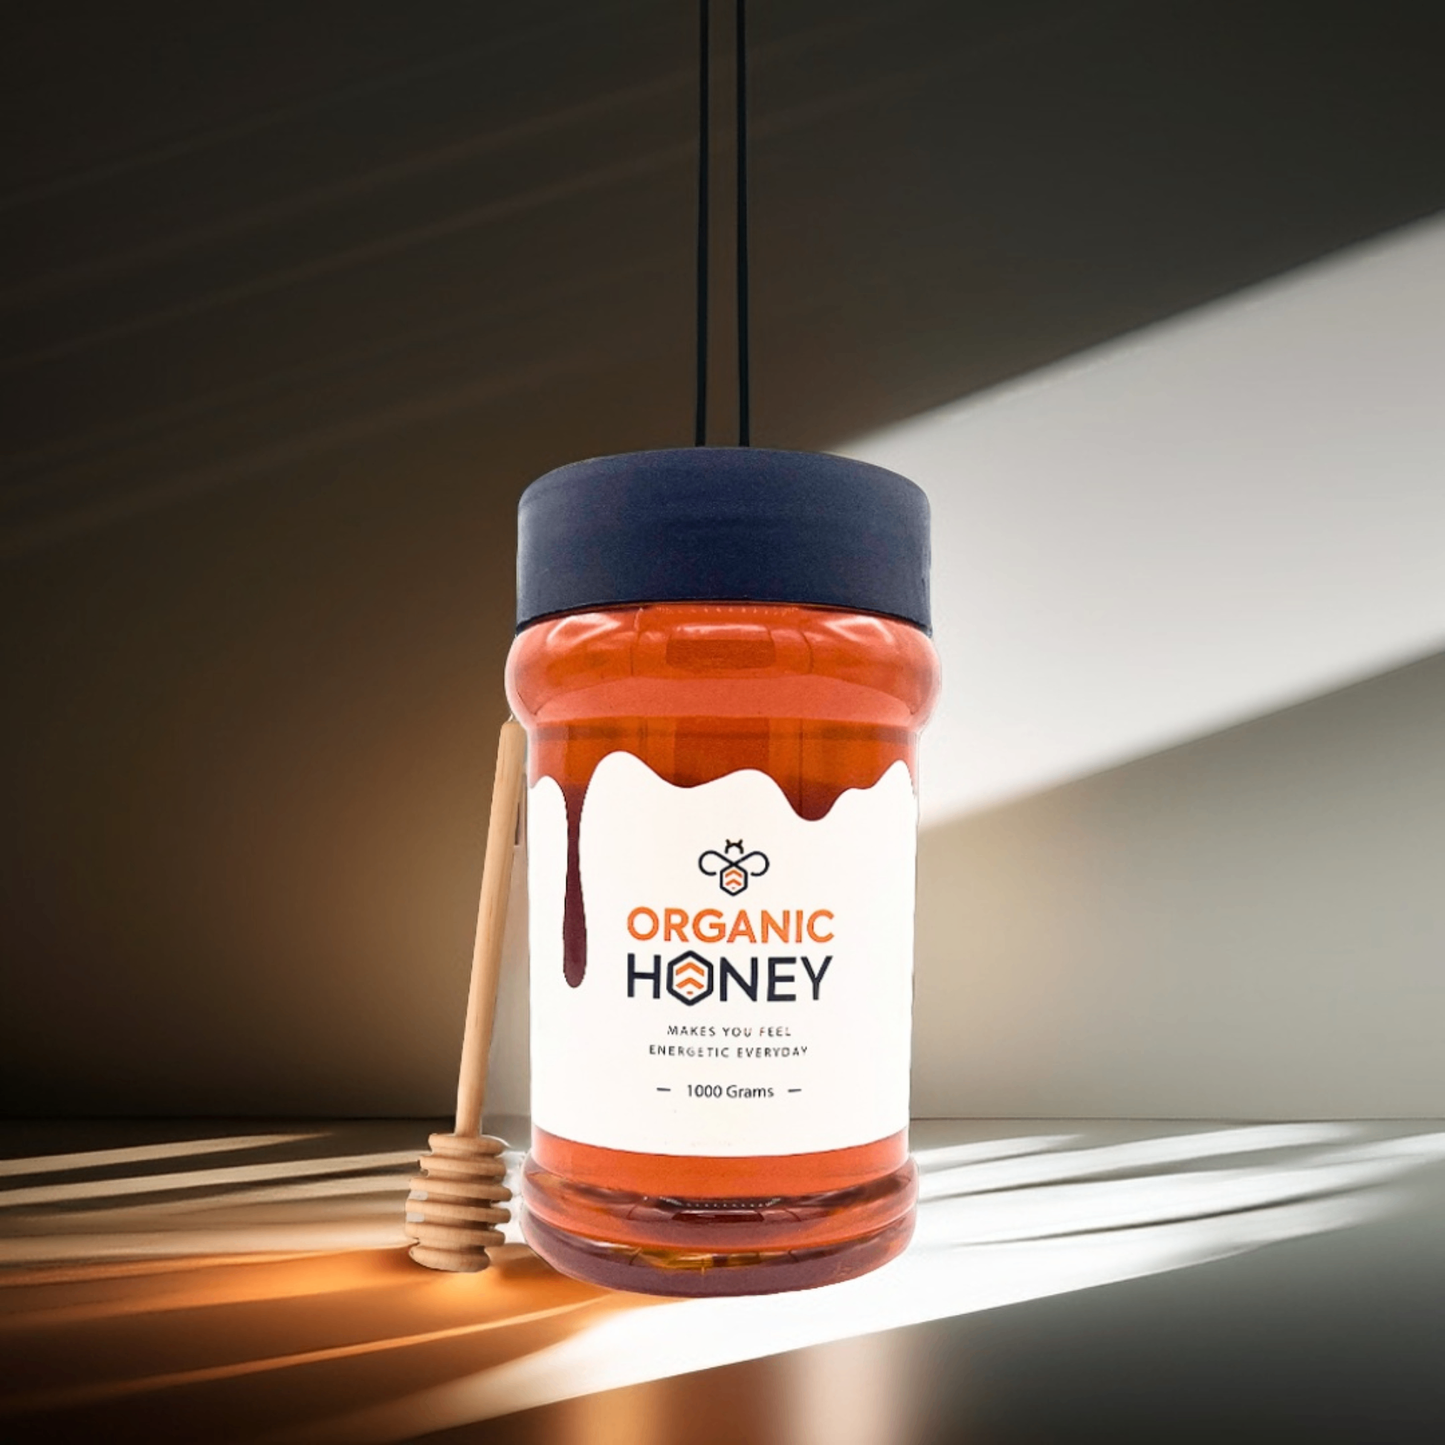 Organic Honey Pakistan - Sidr (Beri) Pure & Raw Bee Honey